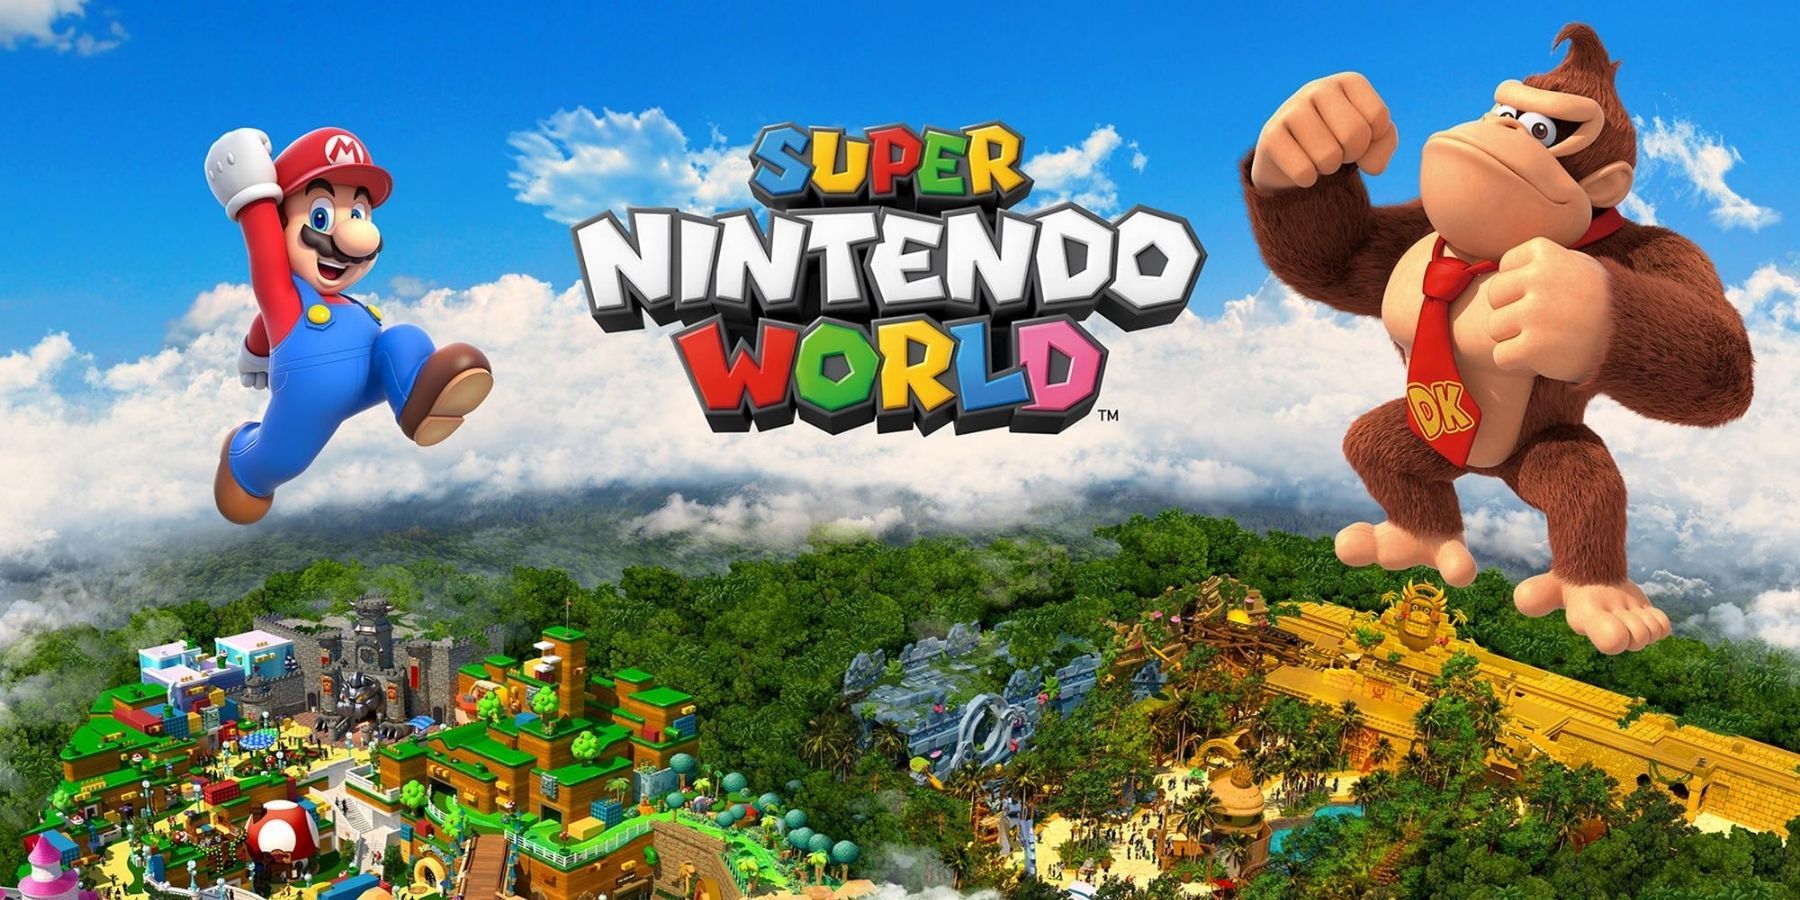 כל האטרקציות השמועות בהרחבת הדונקי קונג של Super Nintendo World